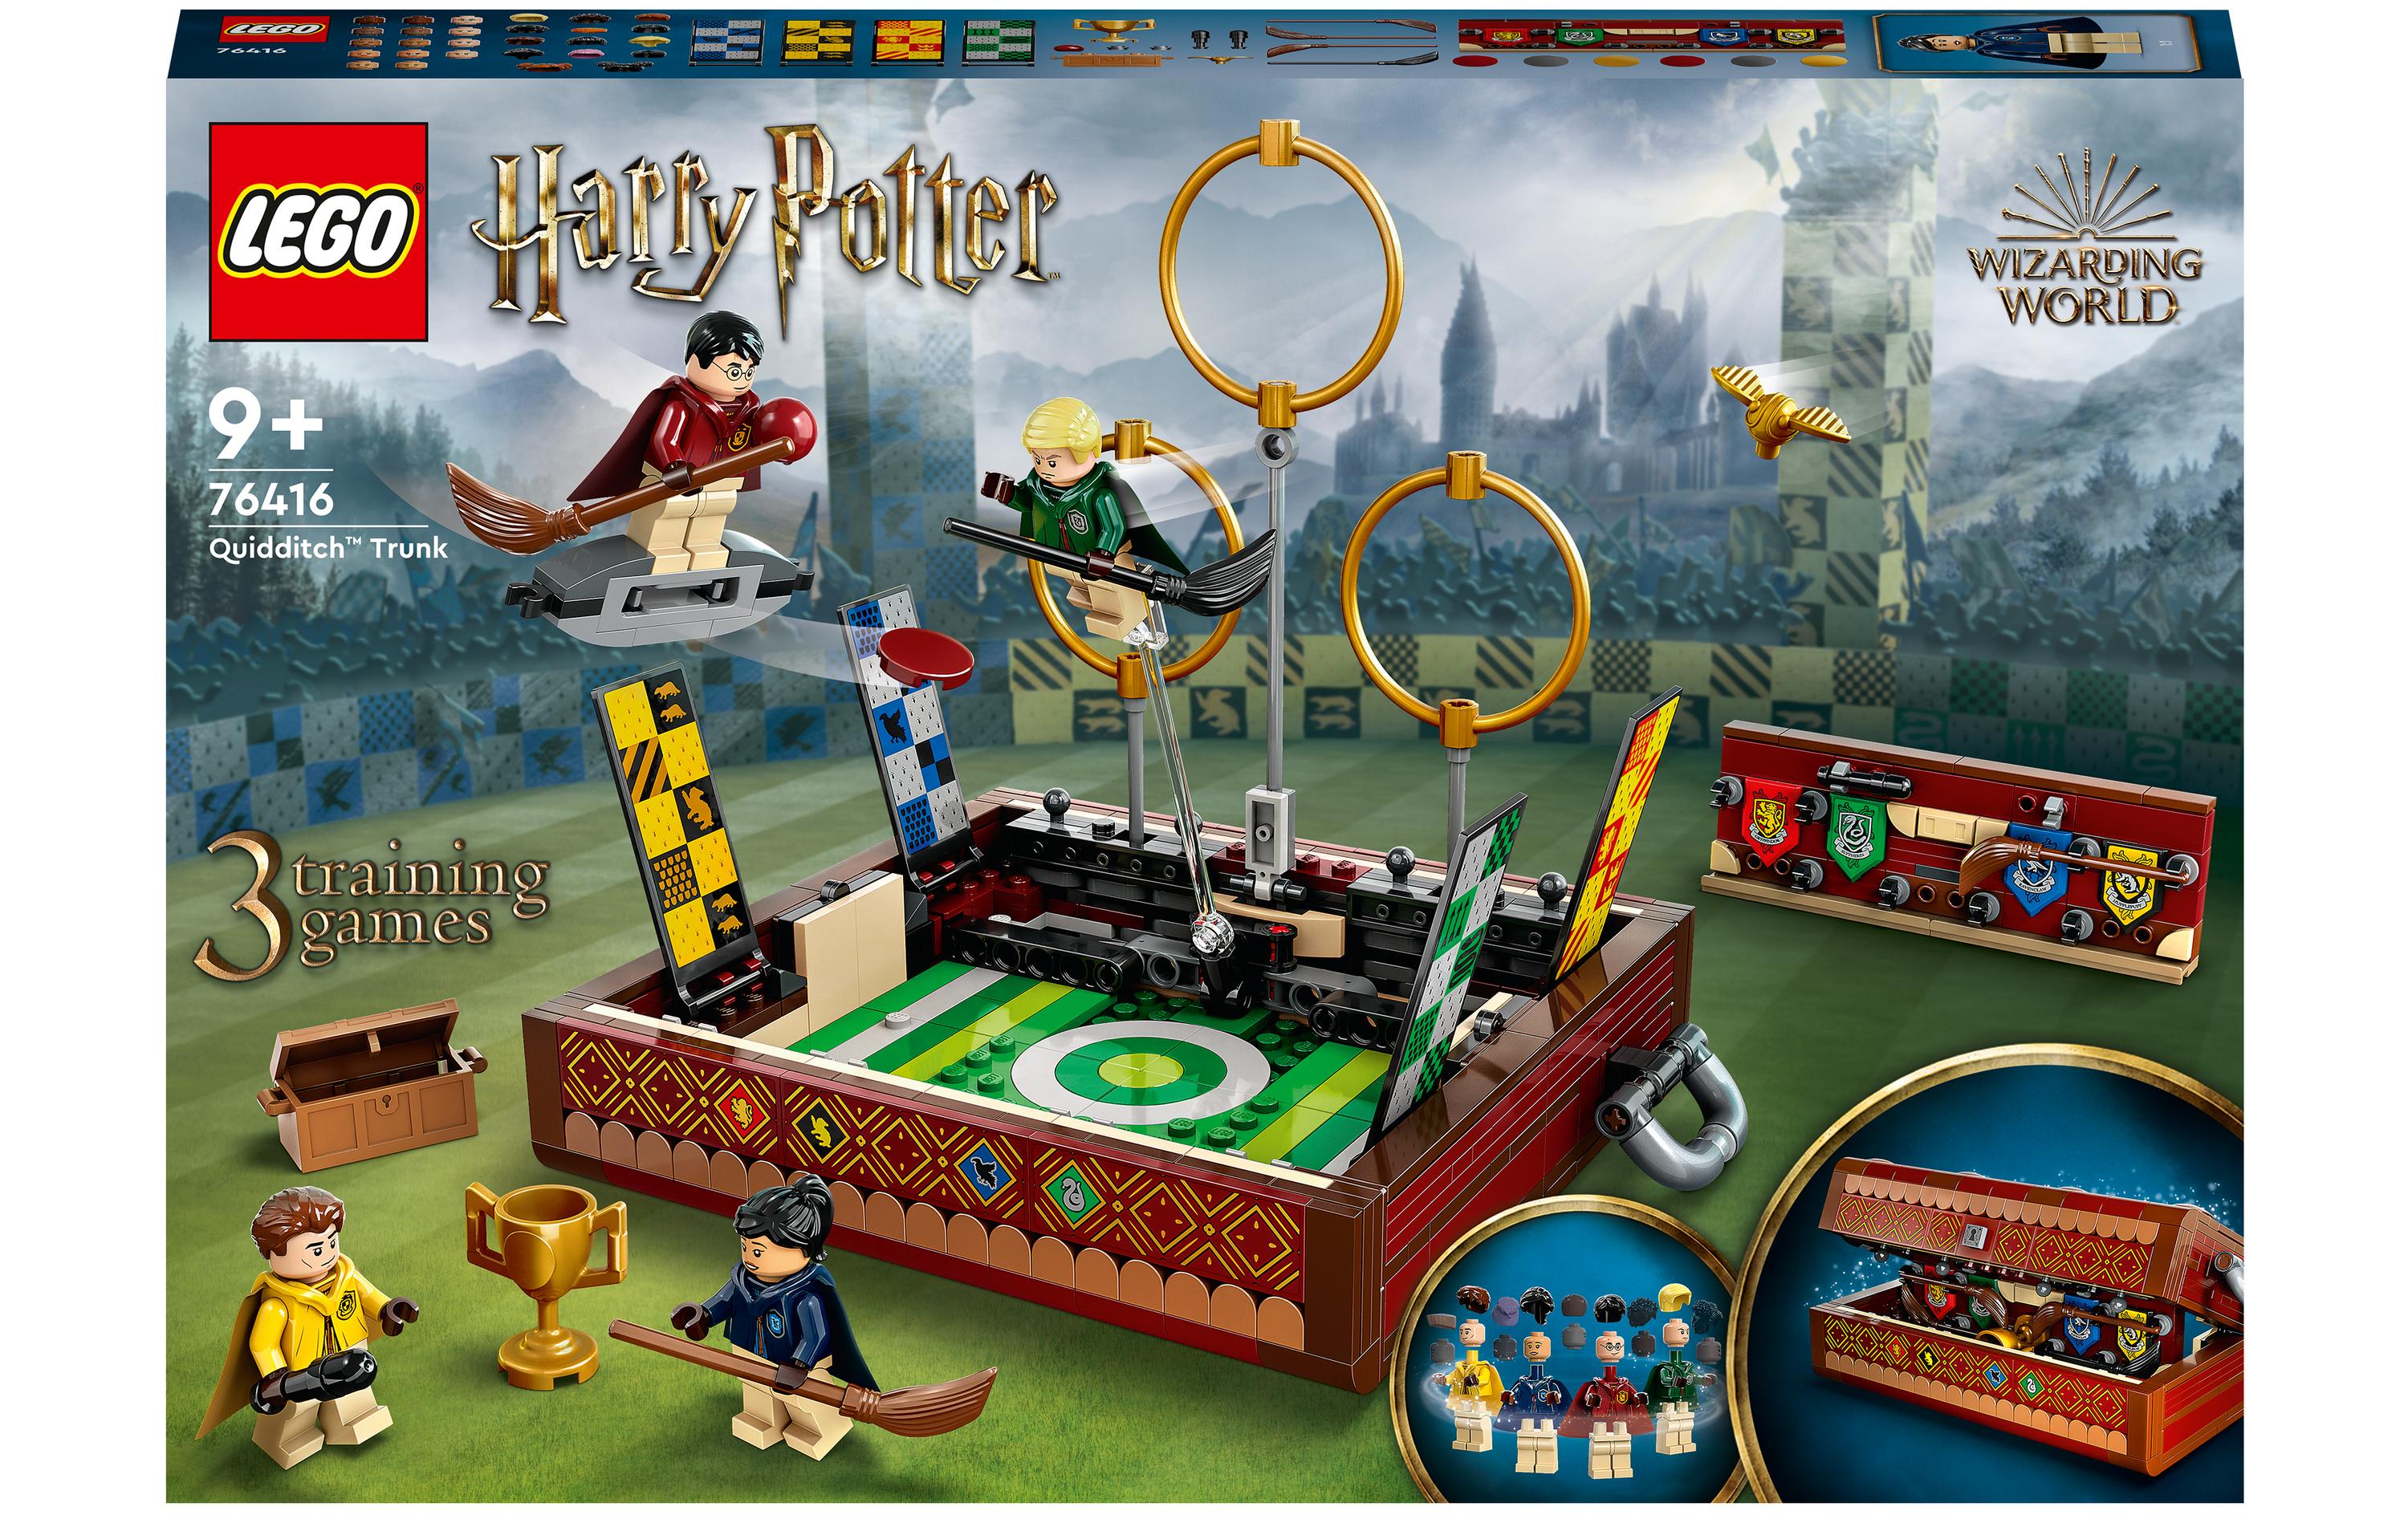 LEGO® Harry Potter Quidditch Koffer 76416 - im GOLDSTIEN.SHOP verfügbar mit Gratisversand ab Schweizer Lager! (5702017413204)